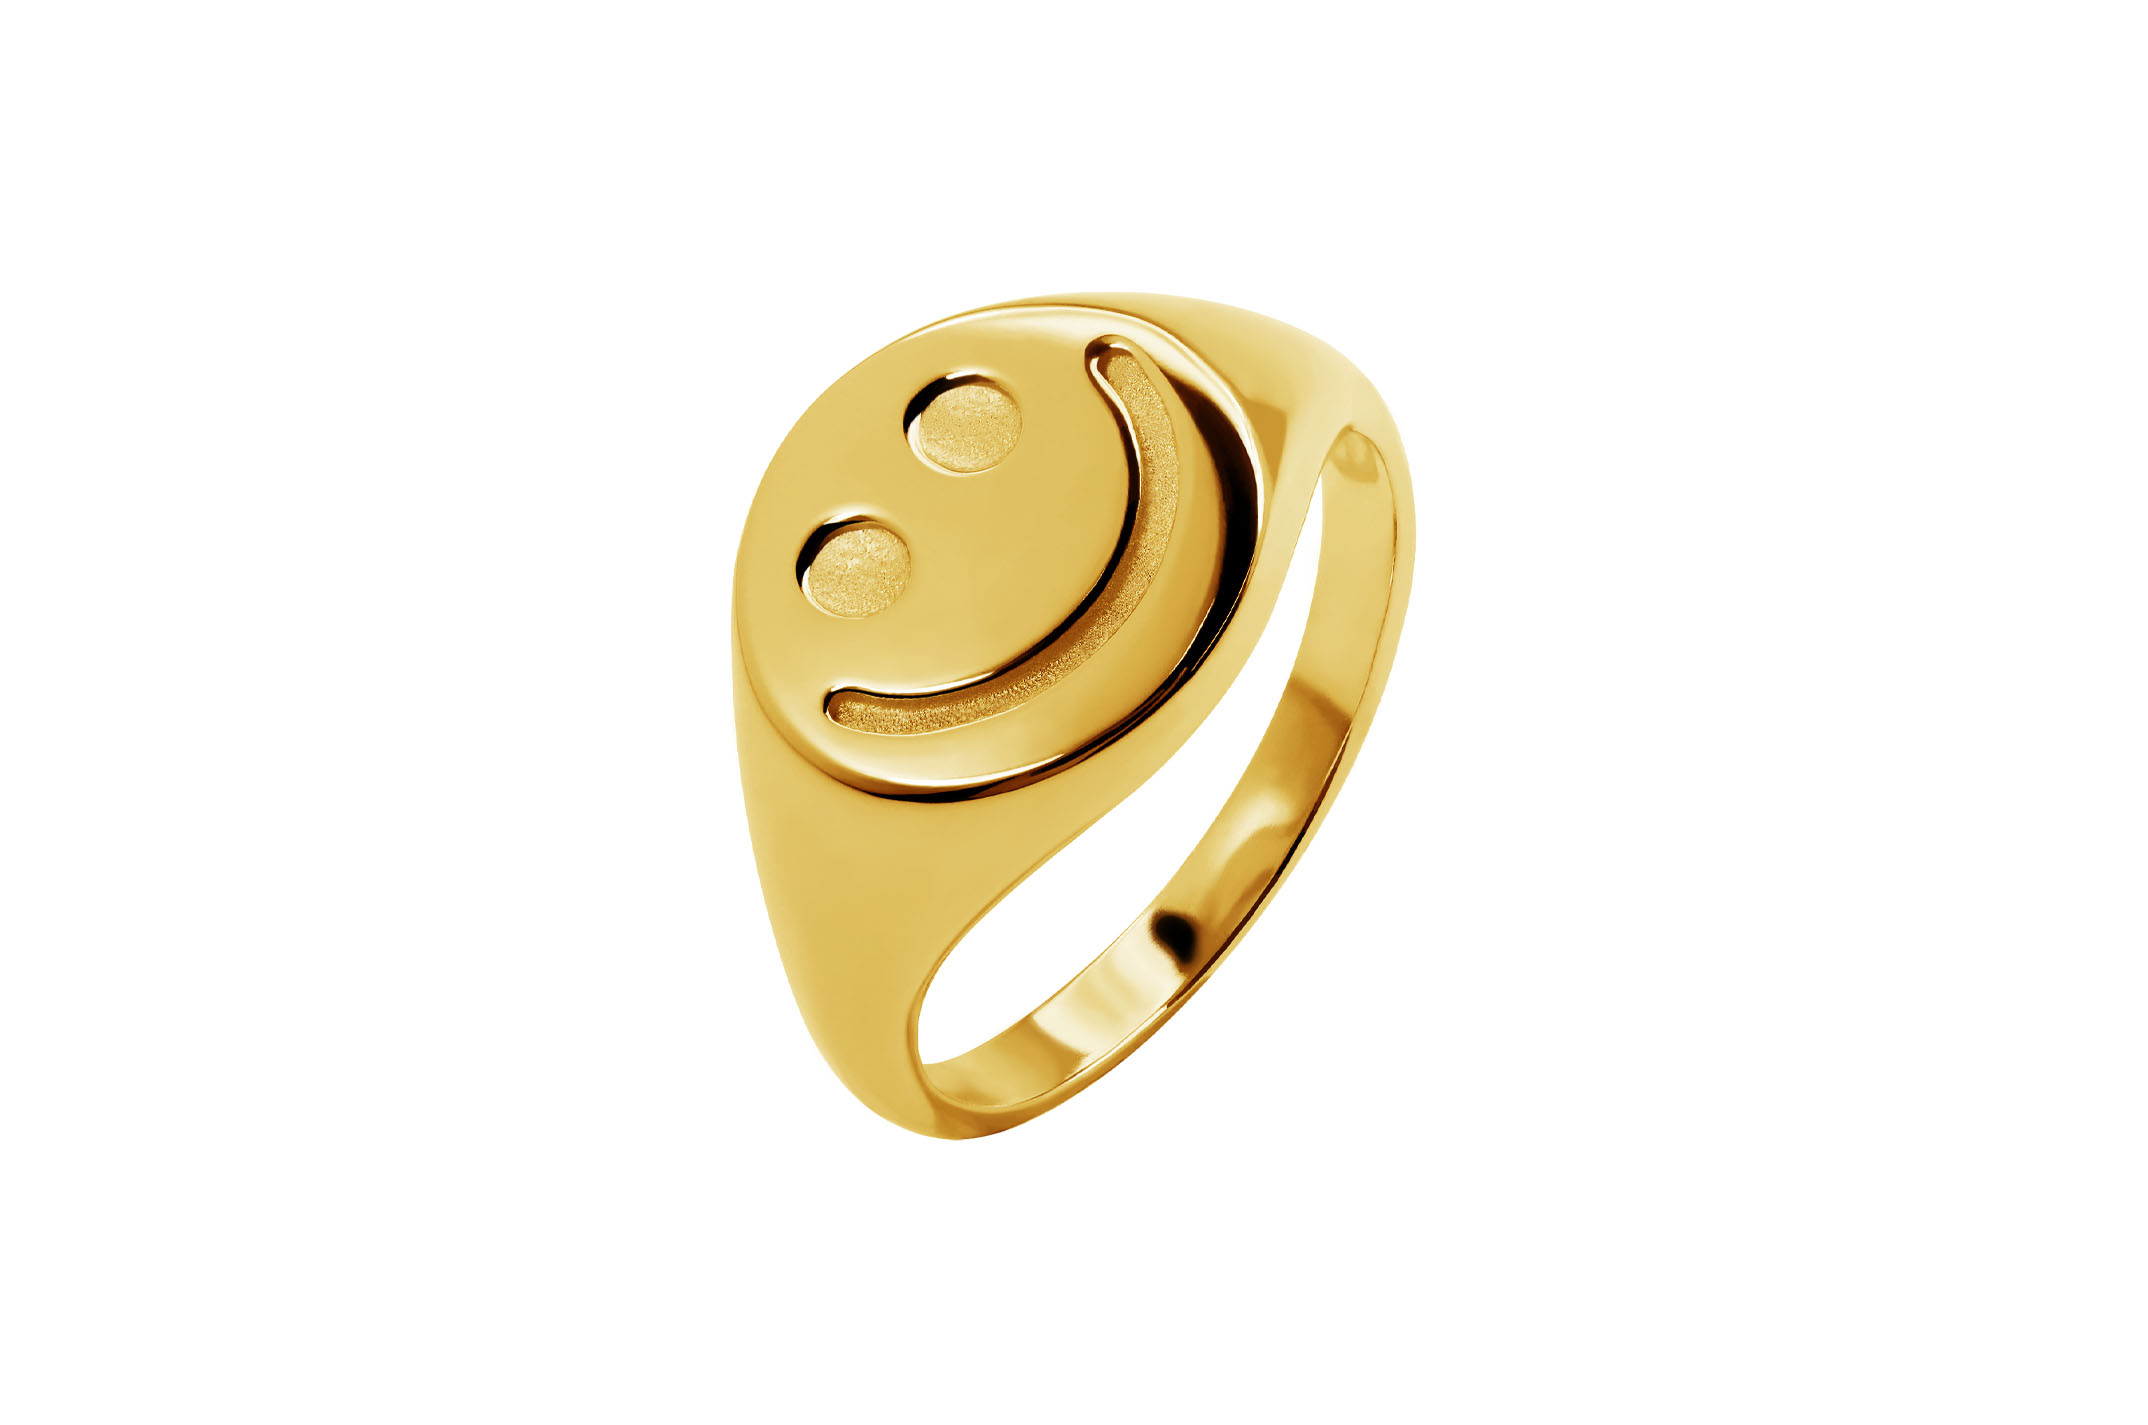 Joia: anel;Material: prata 925;Peso: 3.6 gr;Cor: amarelo;Género: mulher